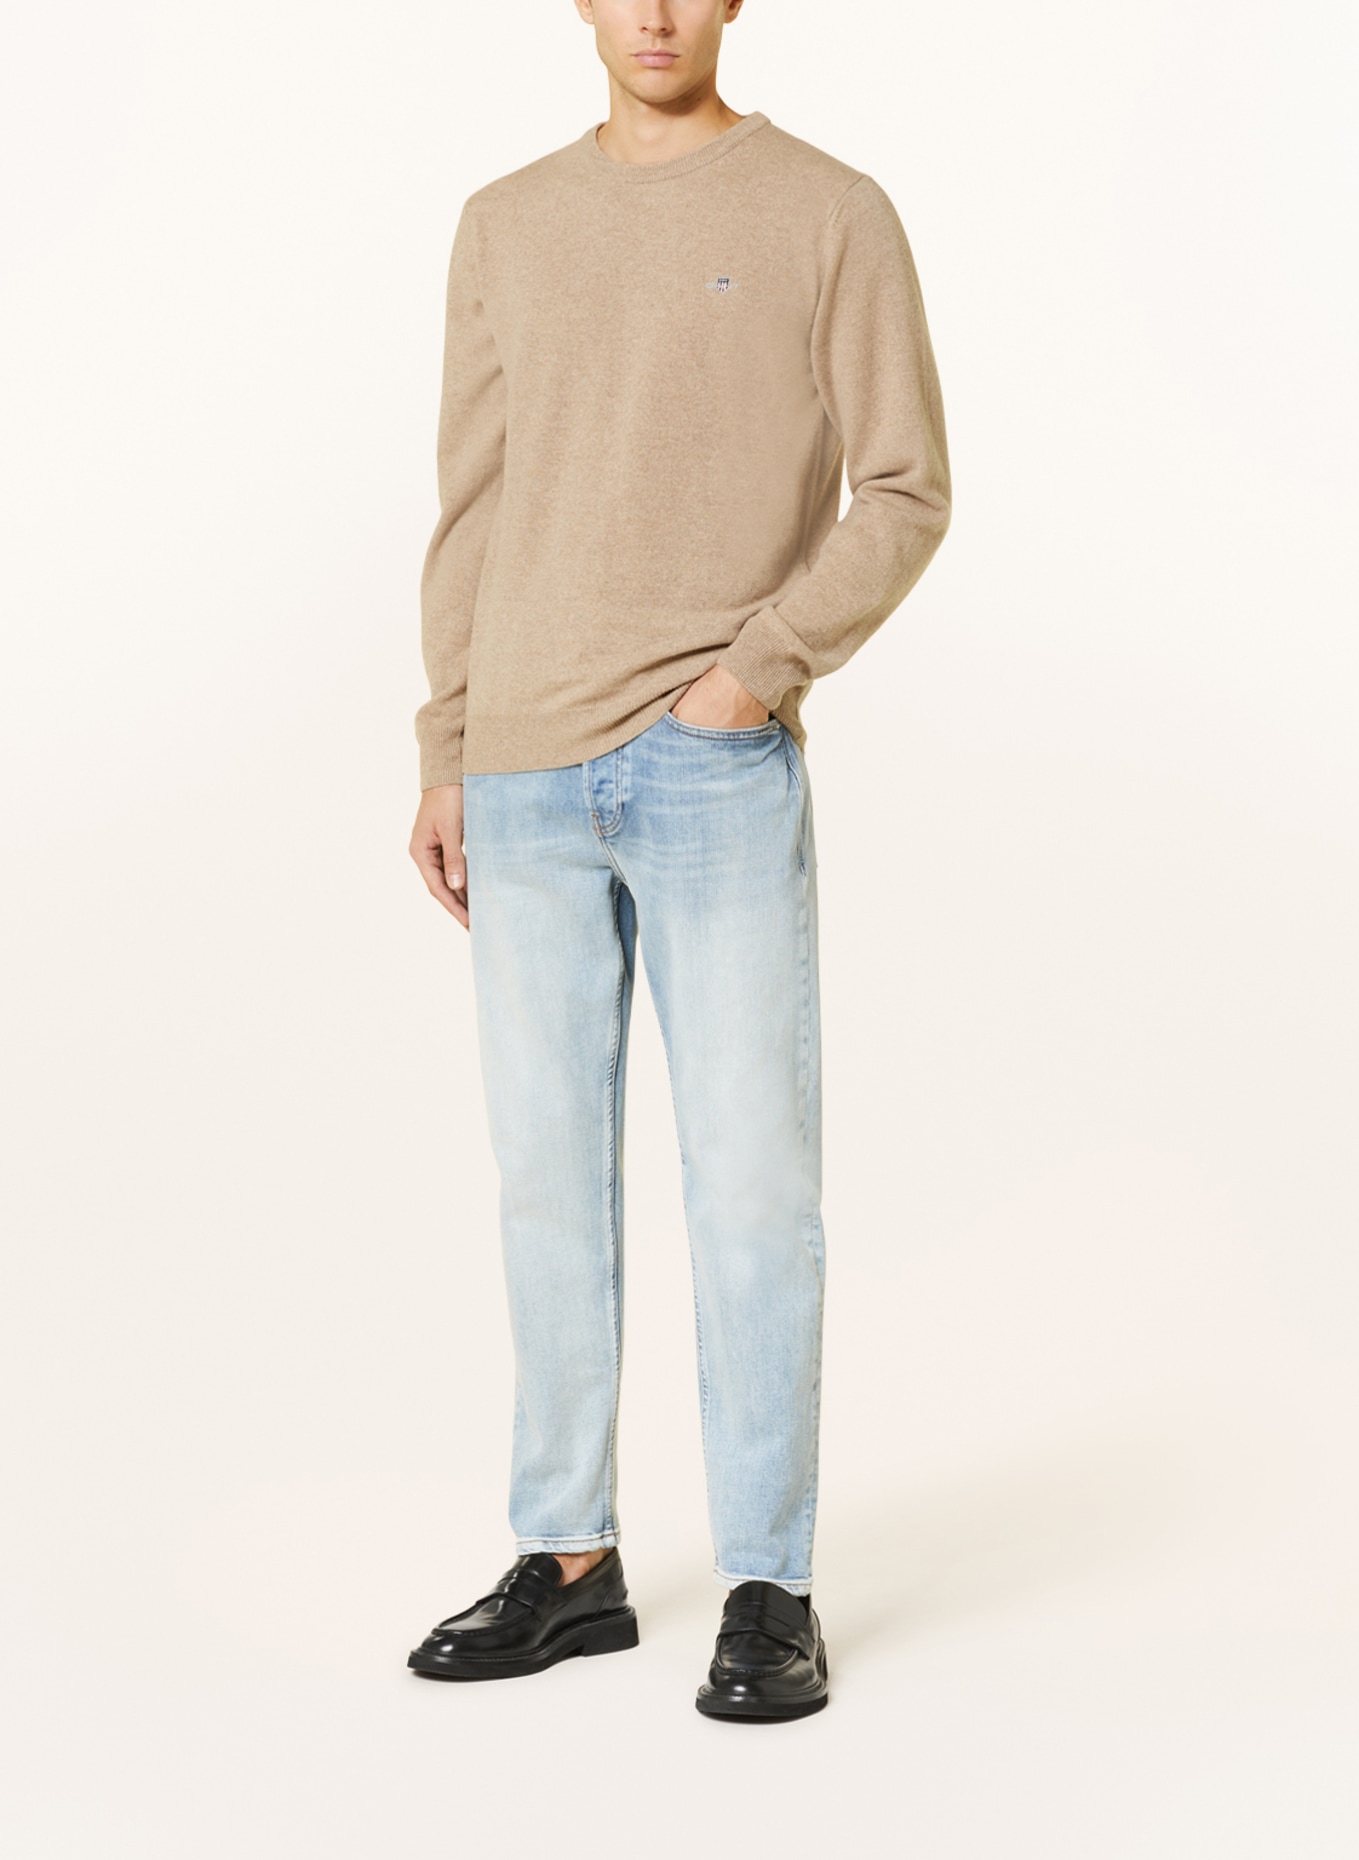 GANT Sweater, Color: BEIGE (Image 2)